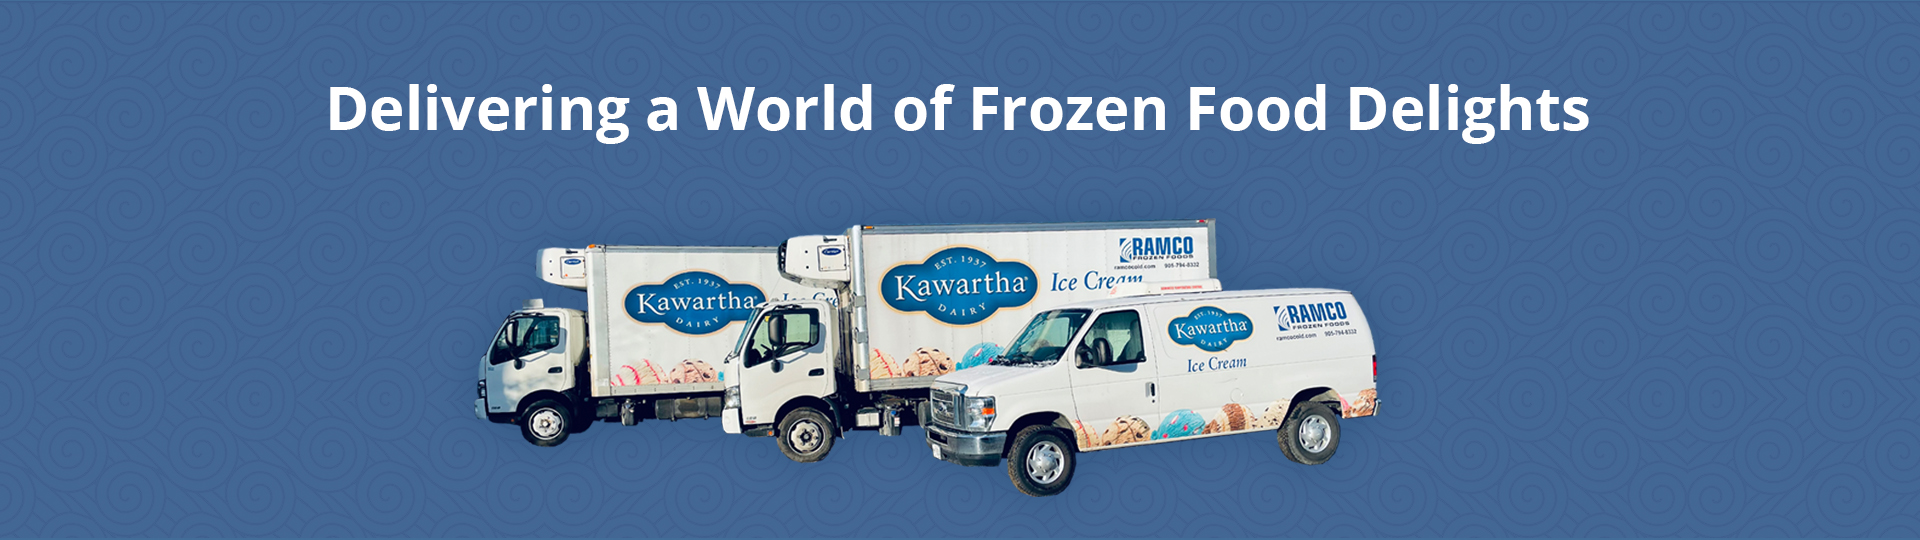 Ramco Frozen Foods